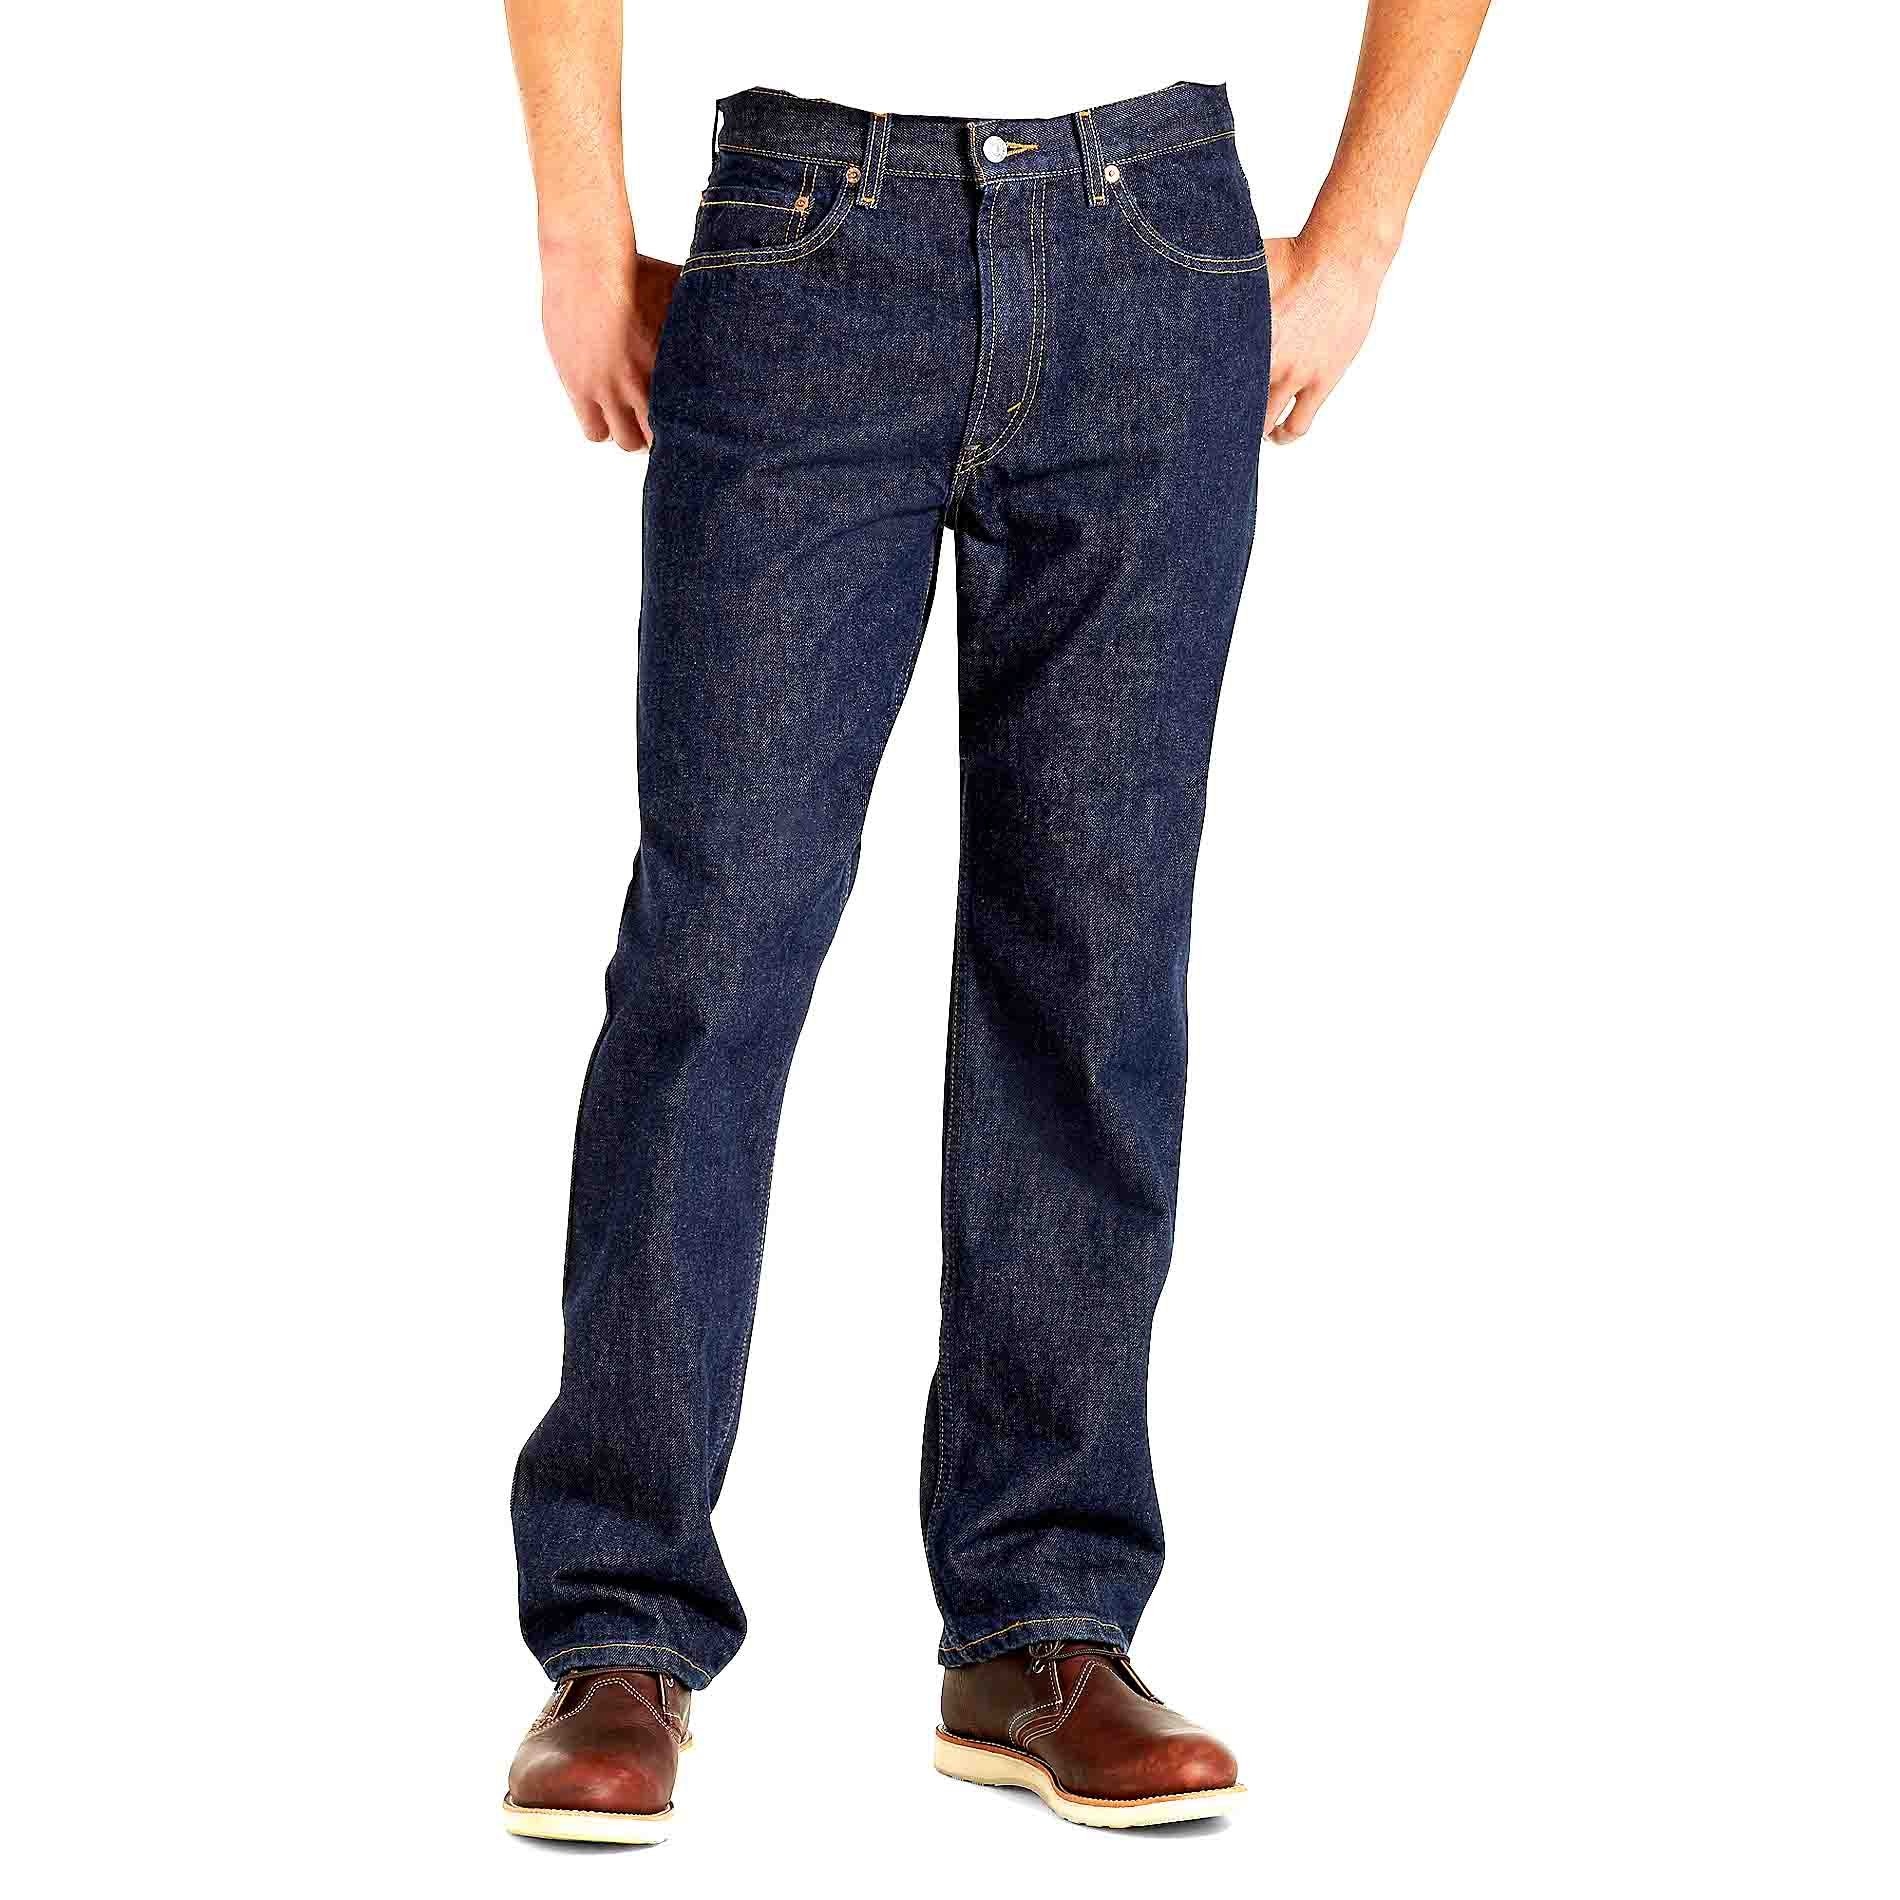 505 Regular Jeans Modelo Elo5050216 Talla Hombre